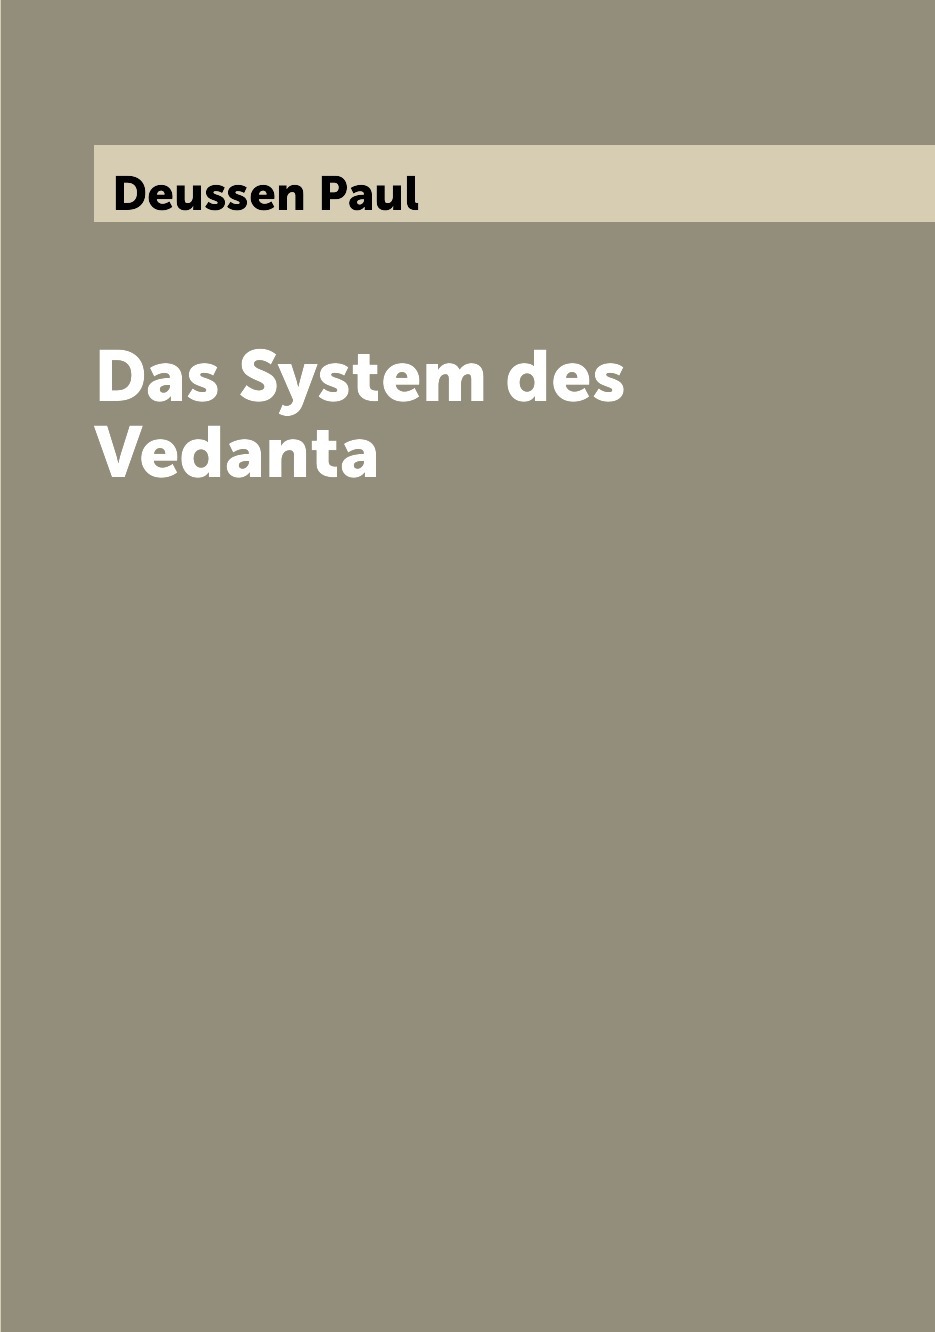 Das system